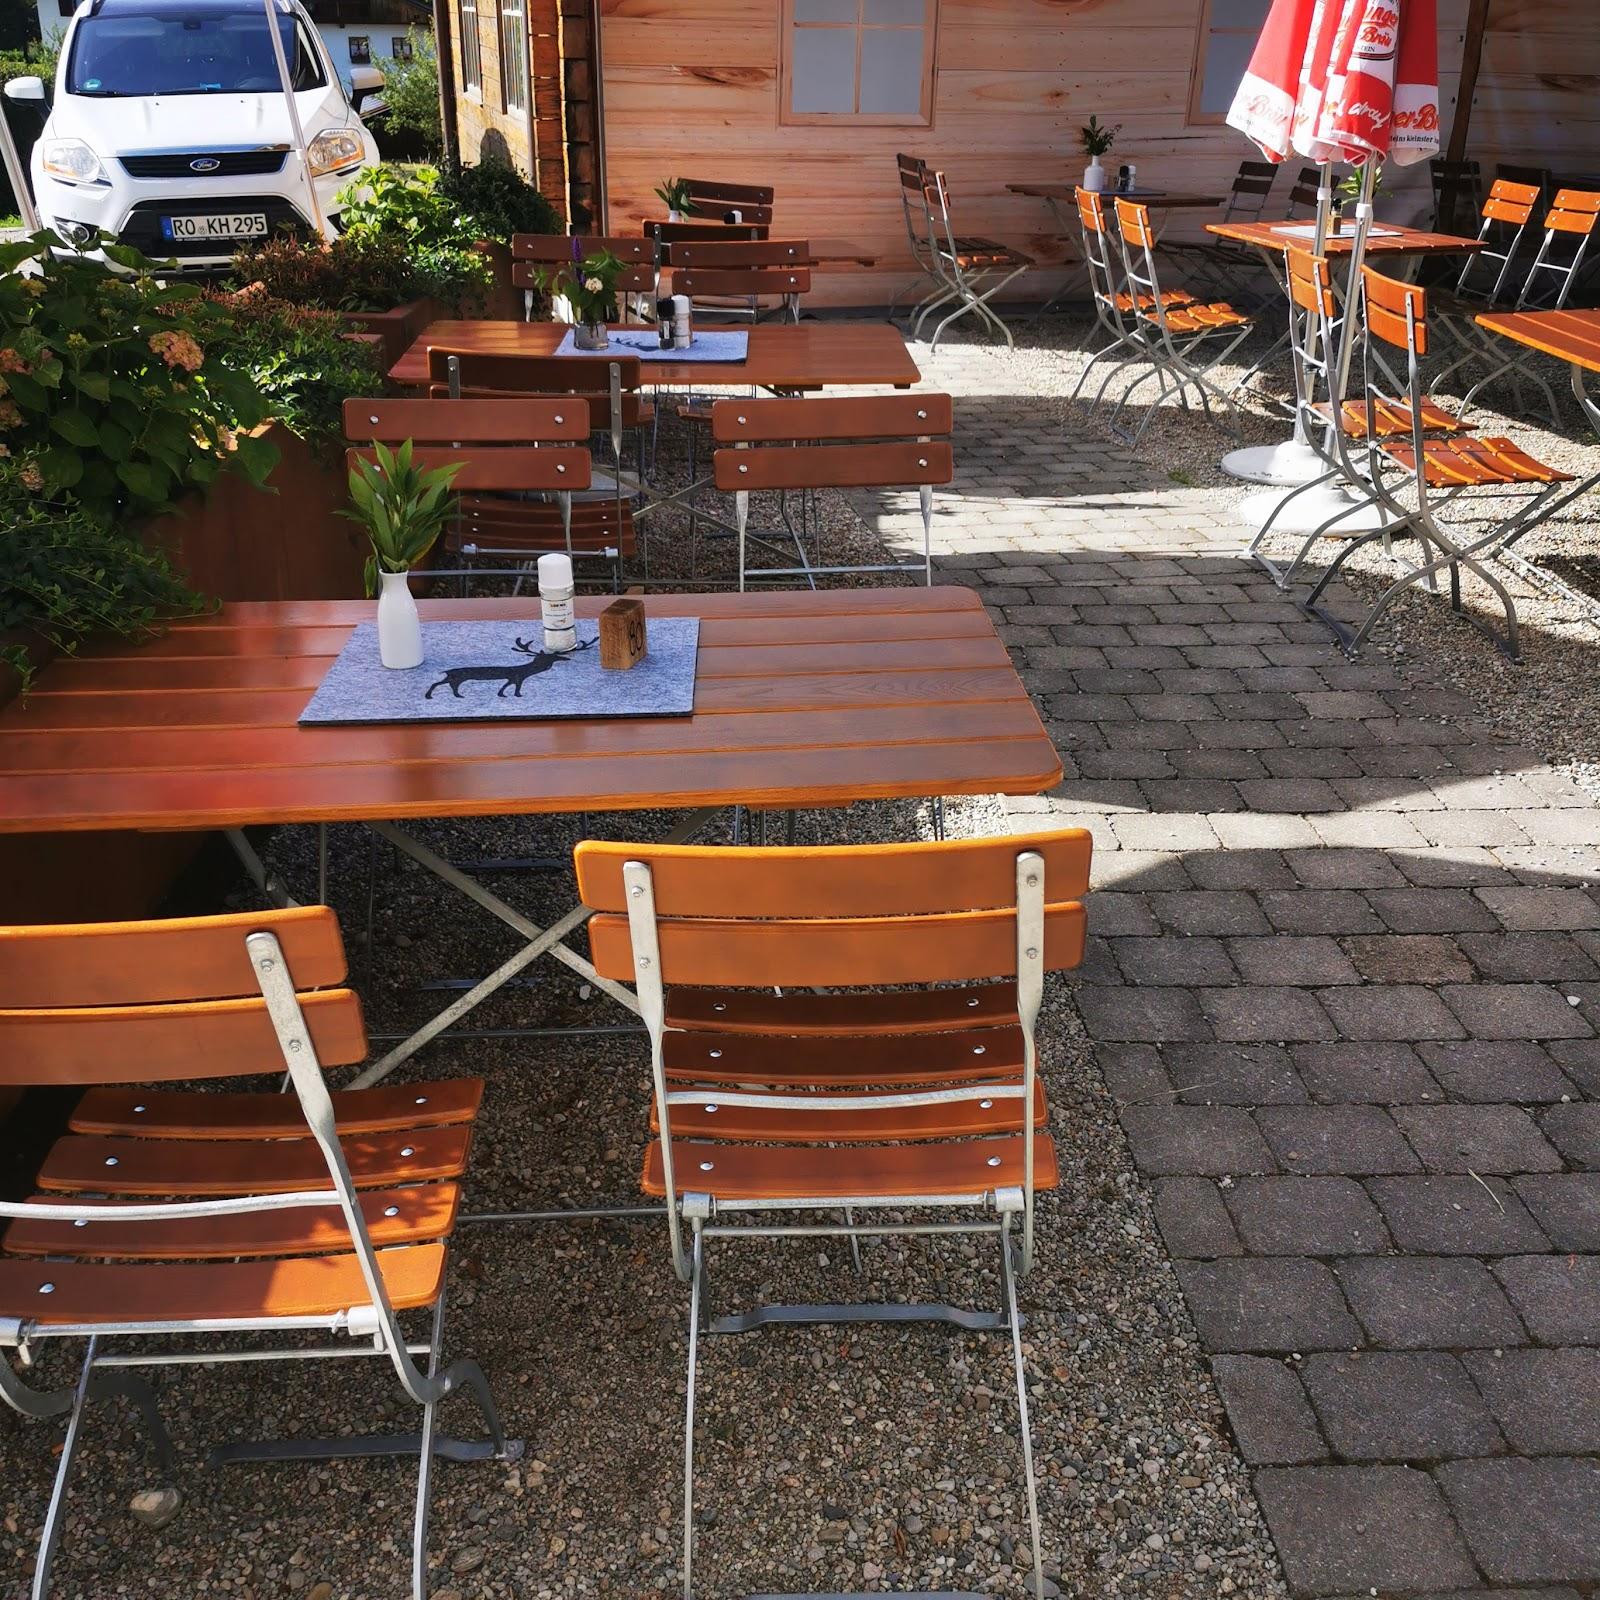 Restaurant "Biergarten Gasthaus" in Frasdorf